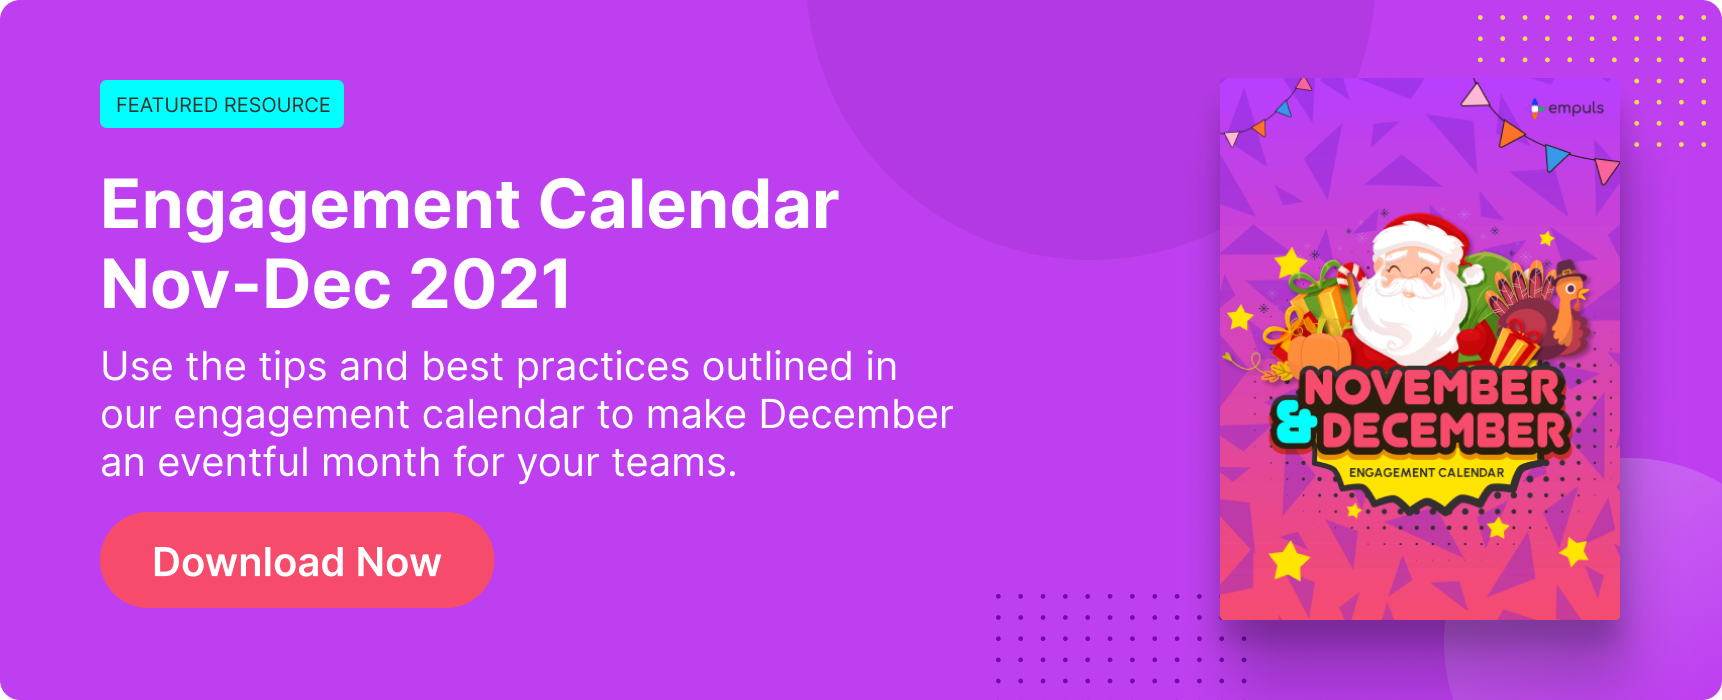 Engagement Calendar - Nov-Dec 2021